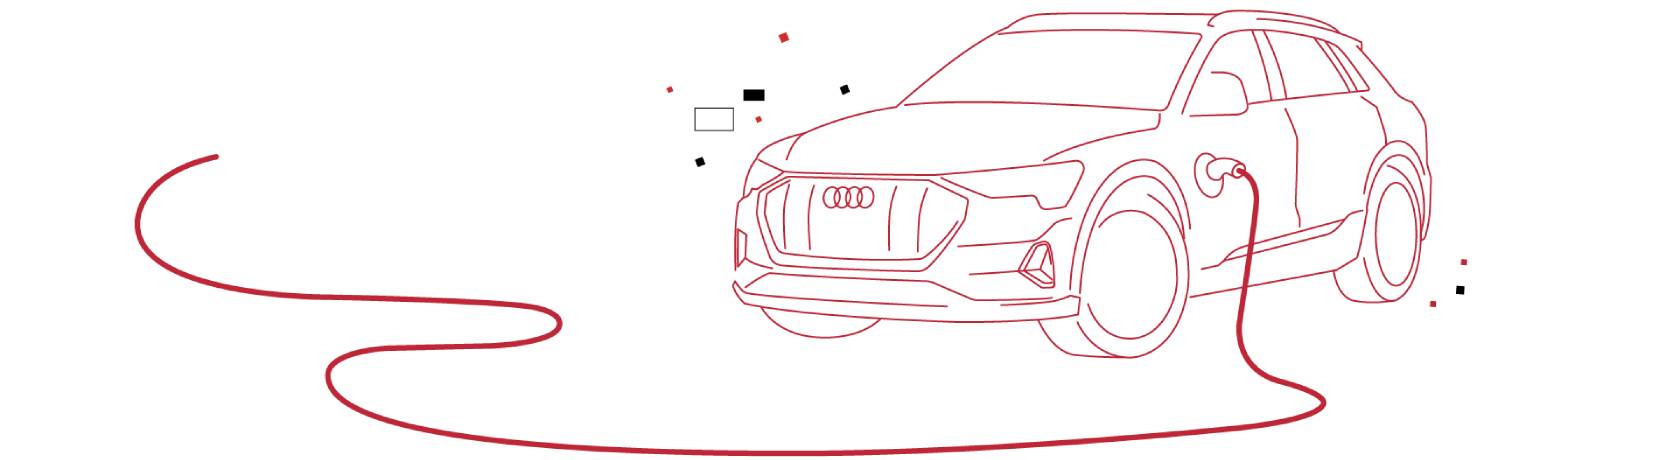 Audi, elettrificazione e digitalizzazione trasformano il lavoro automotive  